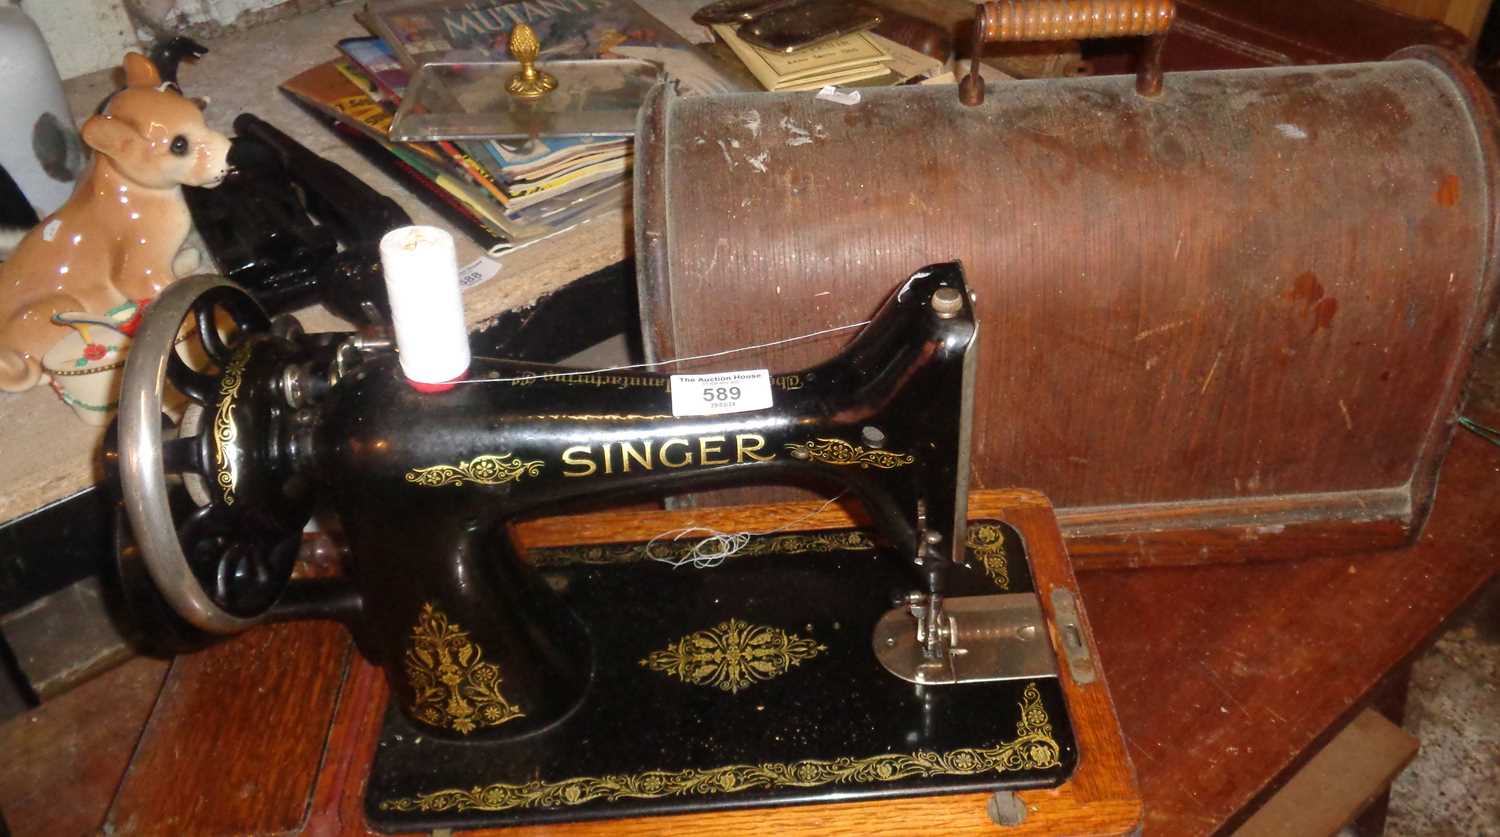 Singer sewing machine - Image 2 of 2